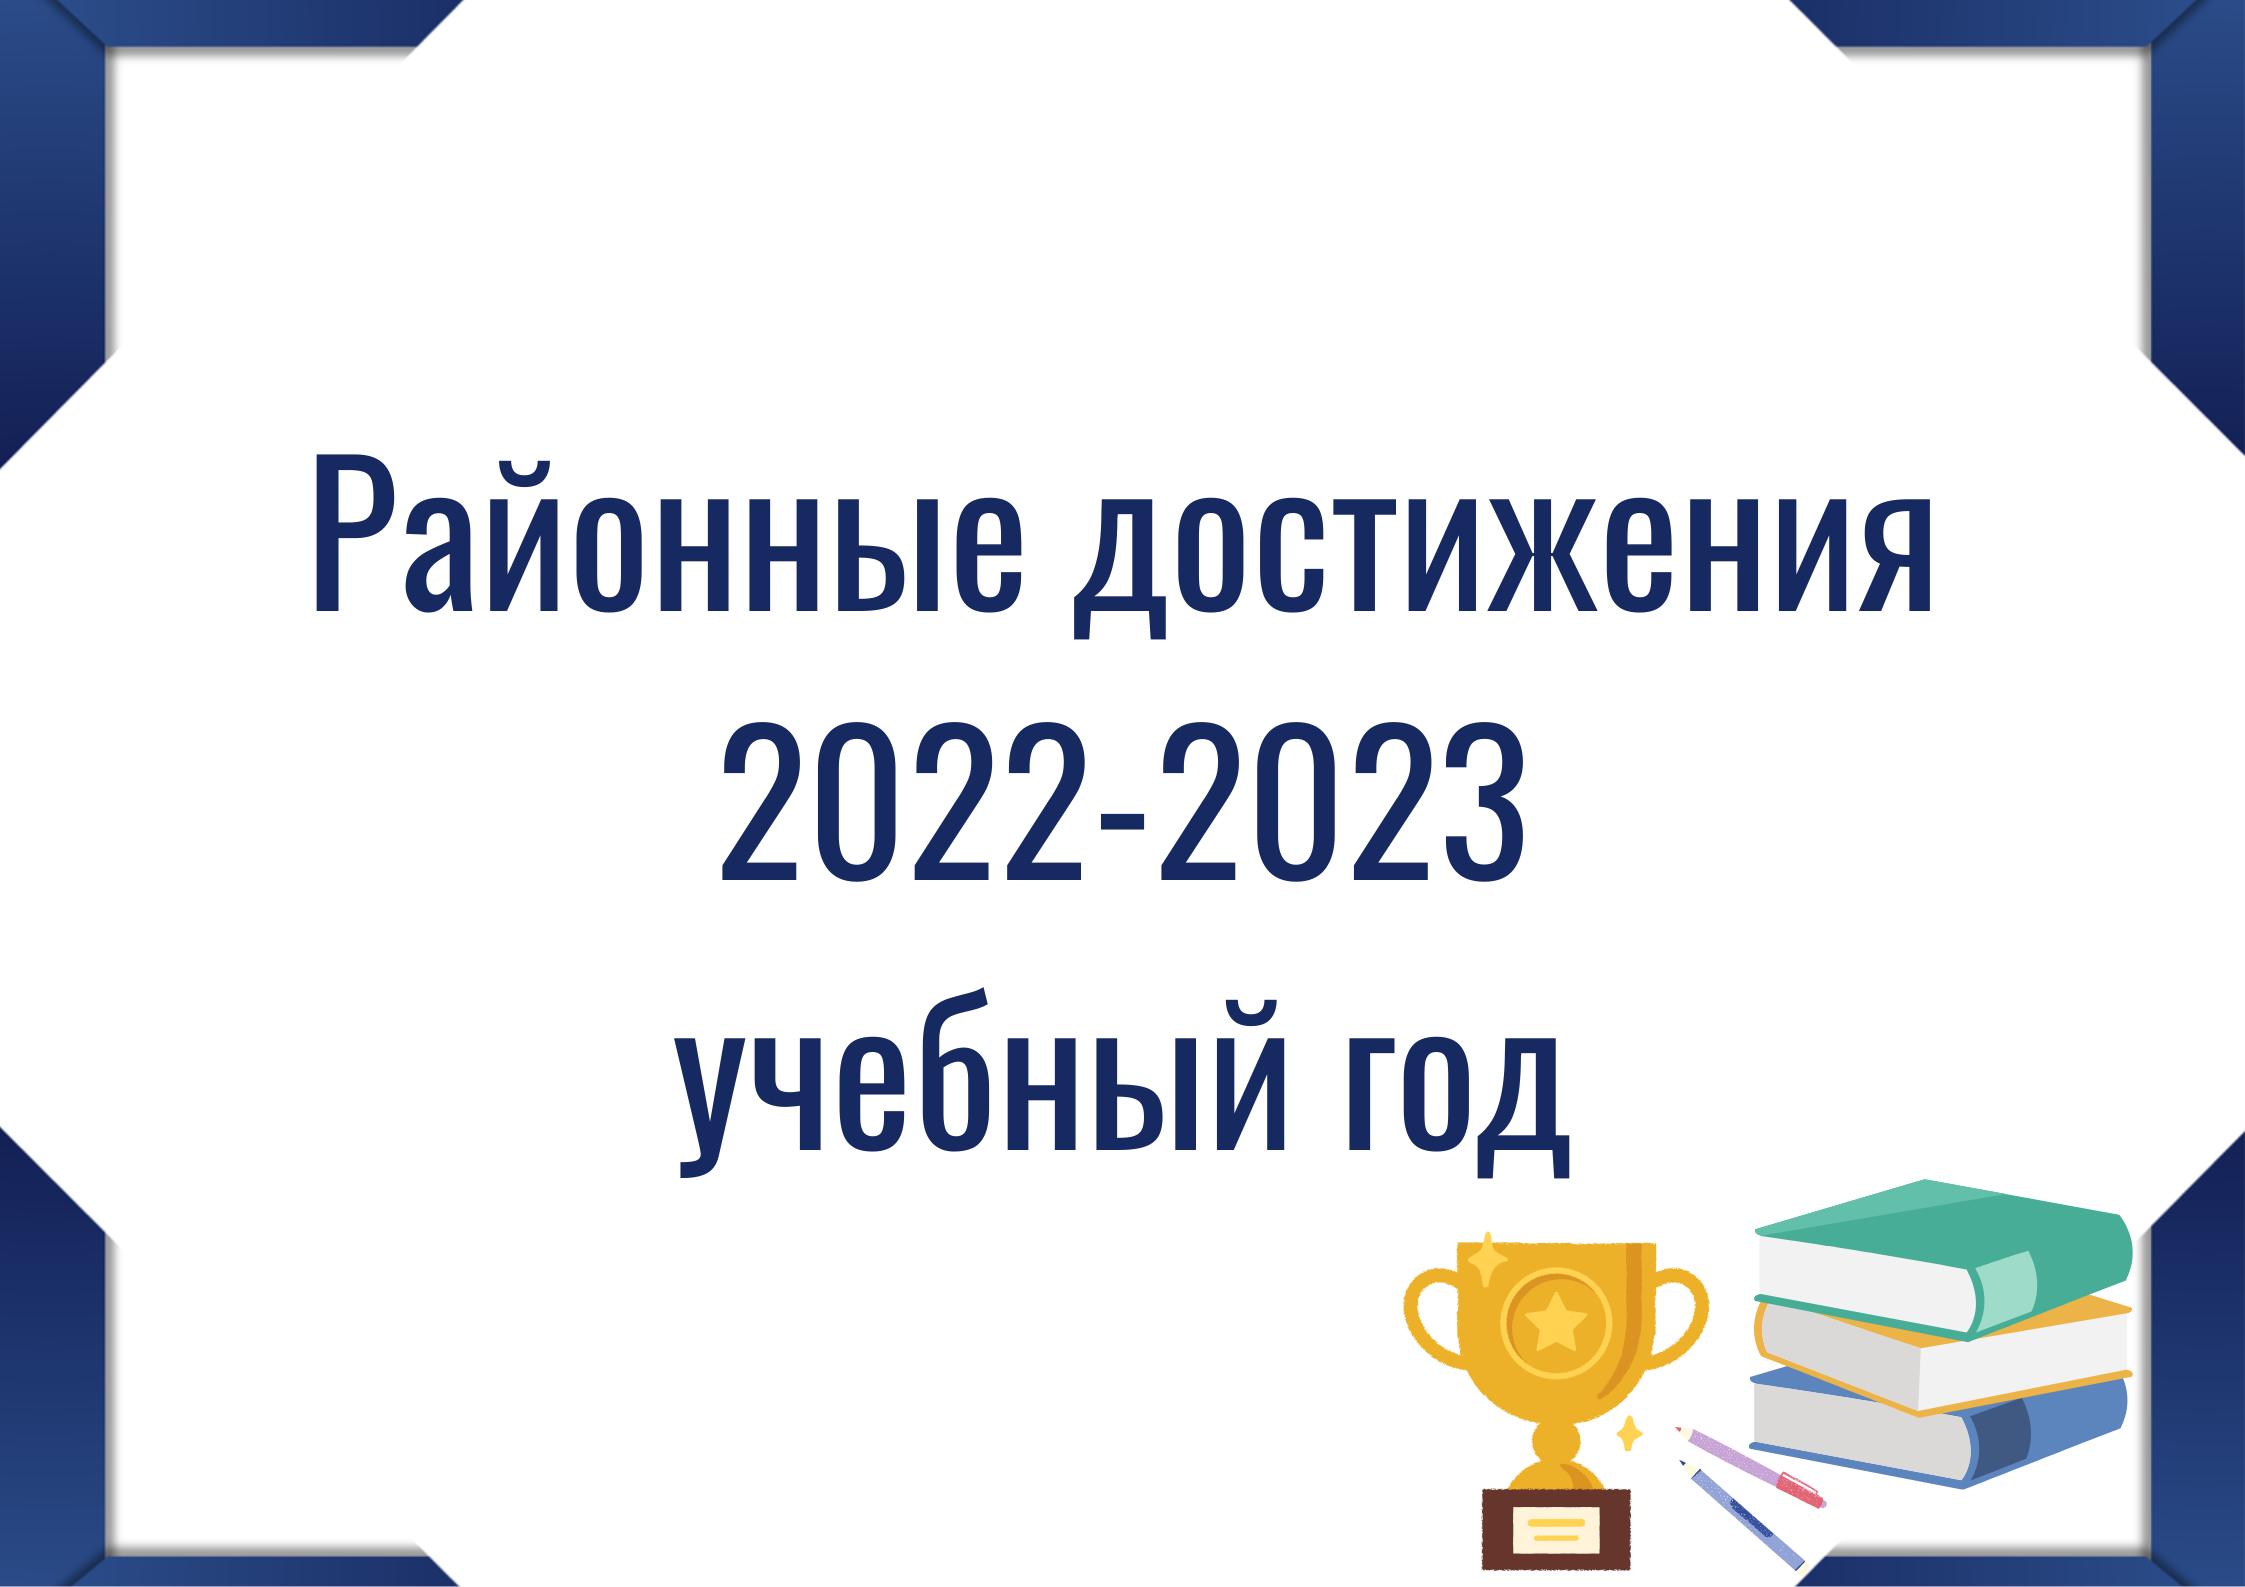 Кнопка "Районные достижения 2022-2023"